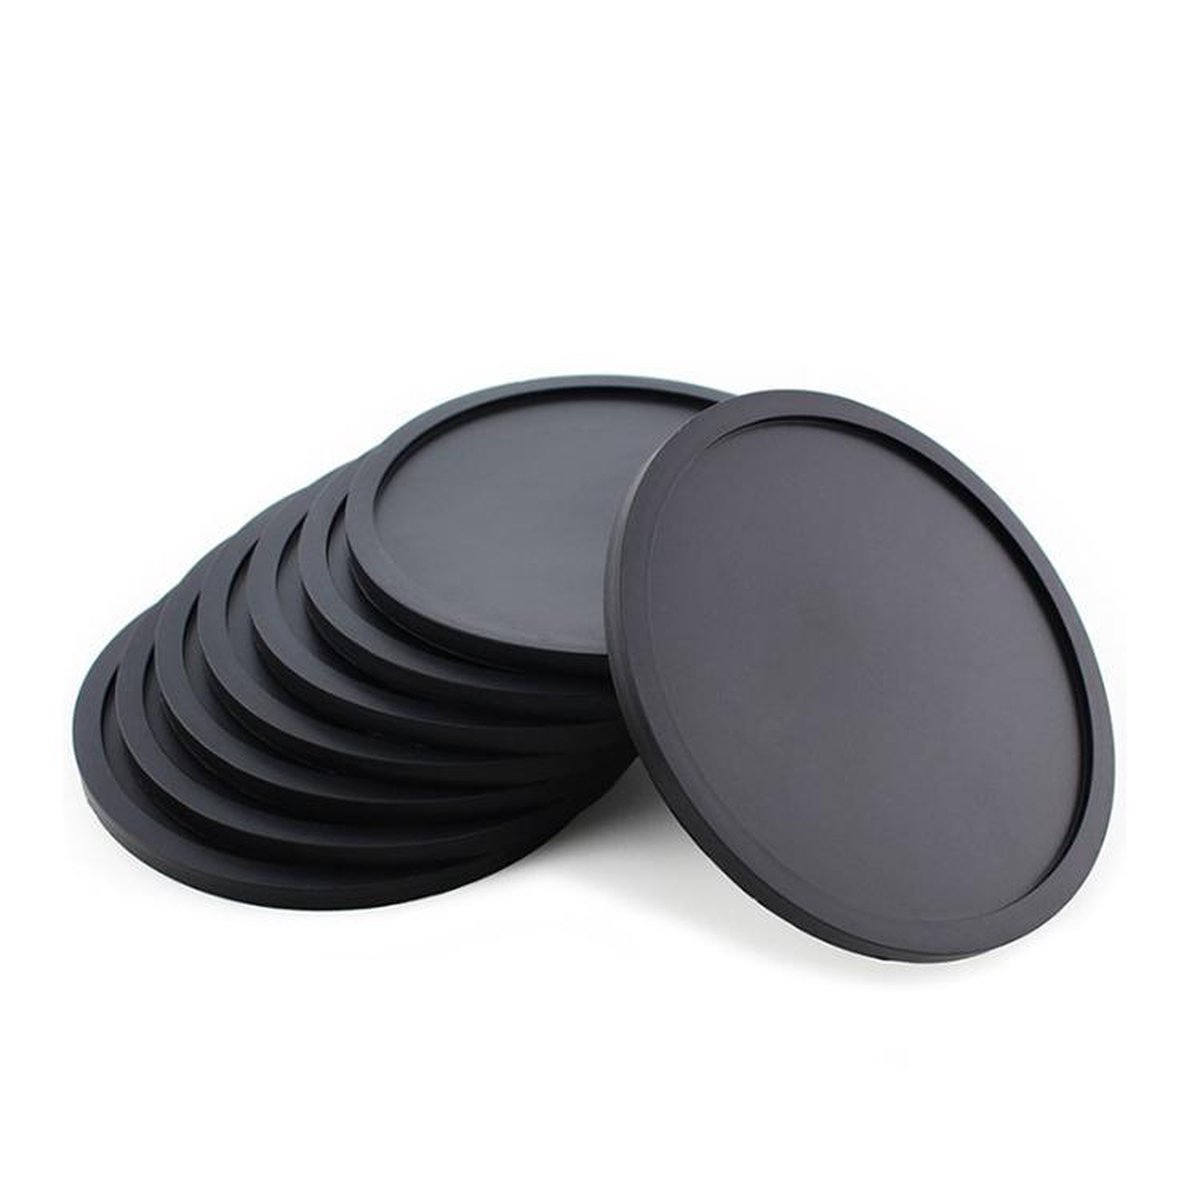 Siliconen onderzetters voor glazen | zwart | 4 stuks, 1 houder -  onderzetters voor... | bol.com